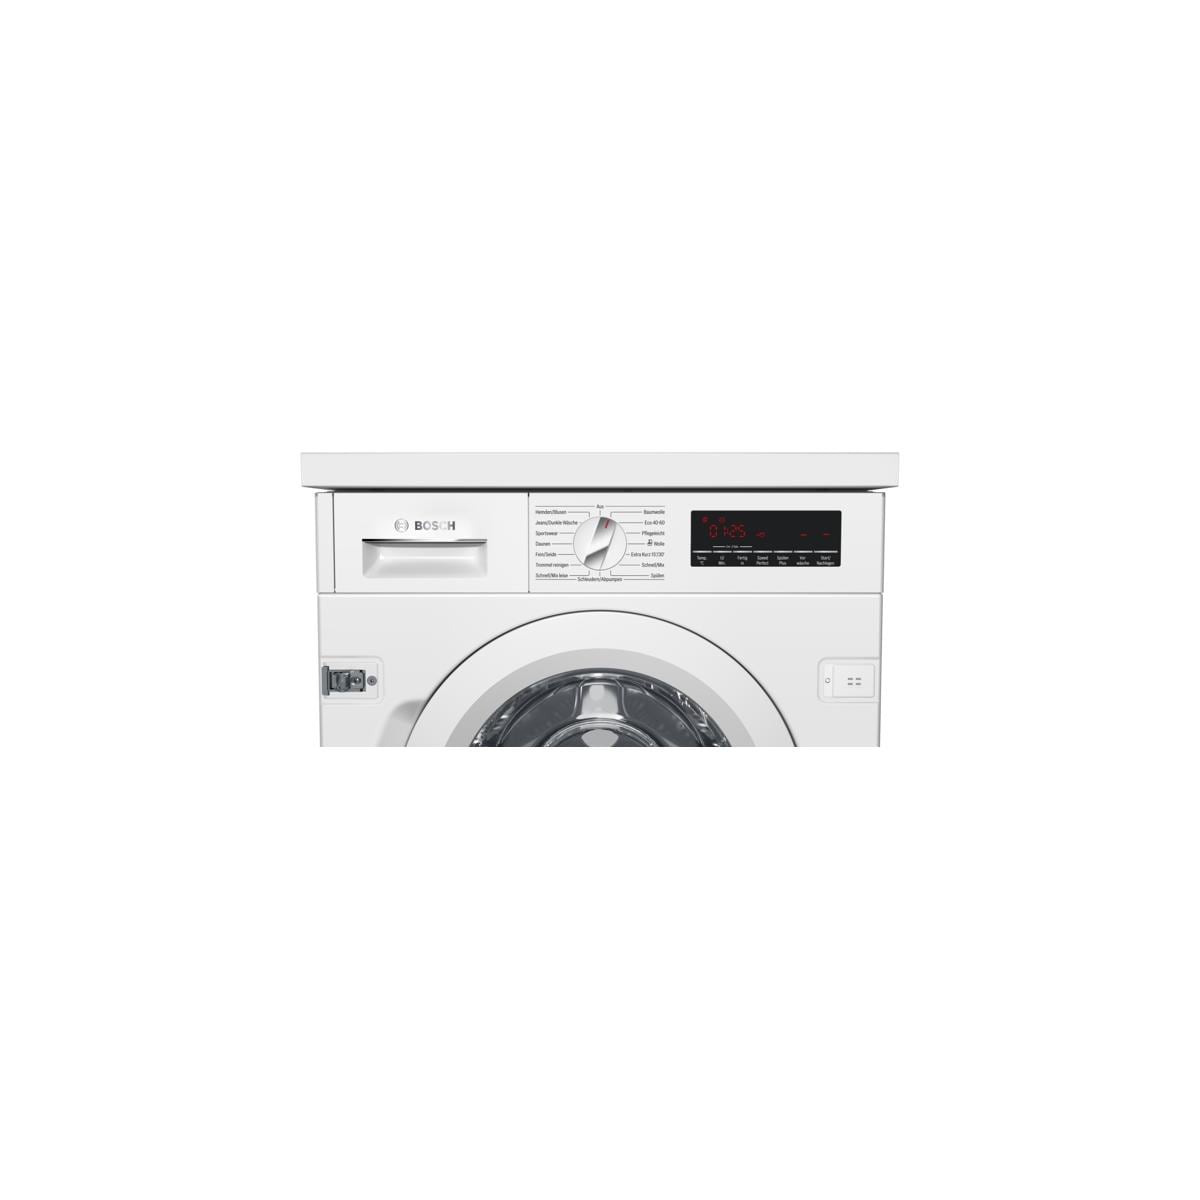 Bosch WIW28443 8kg Einbau Waschmaschine, 60cm breit, 1400 U/min